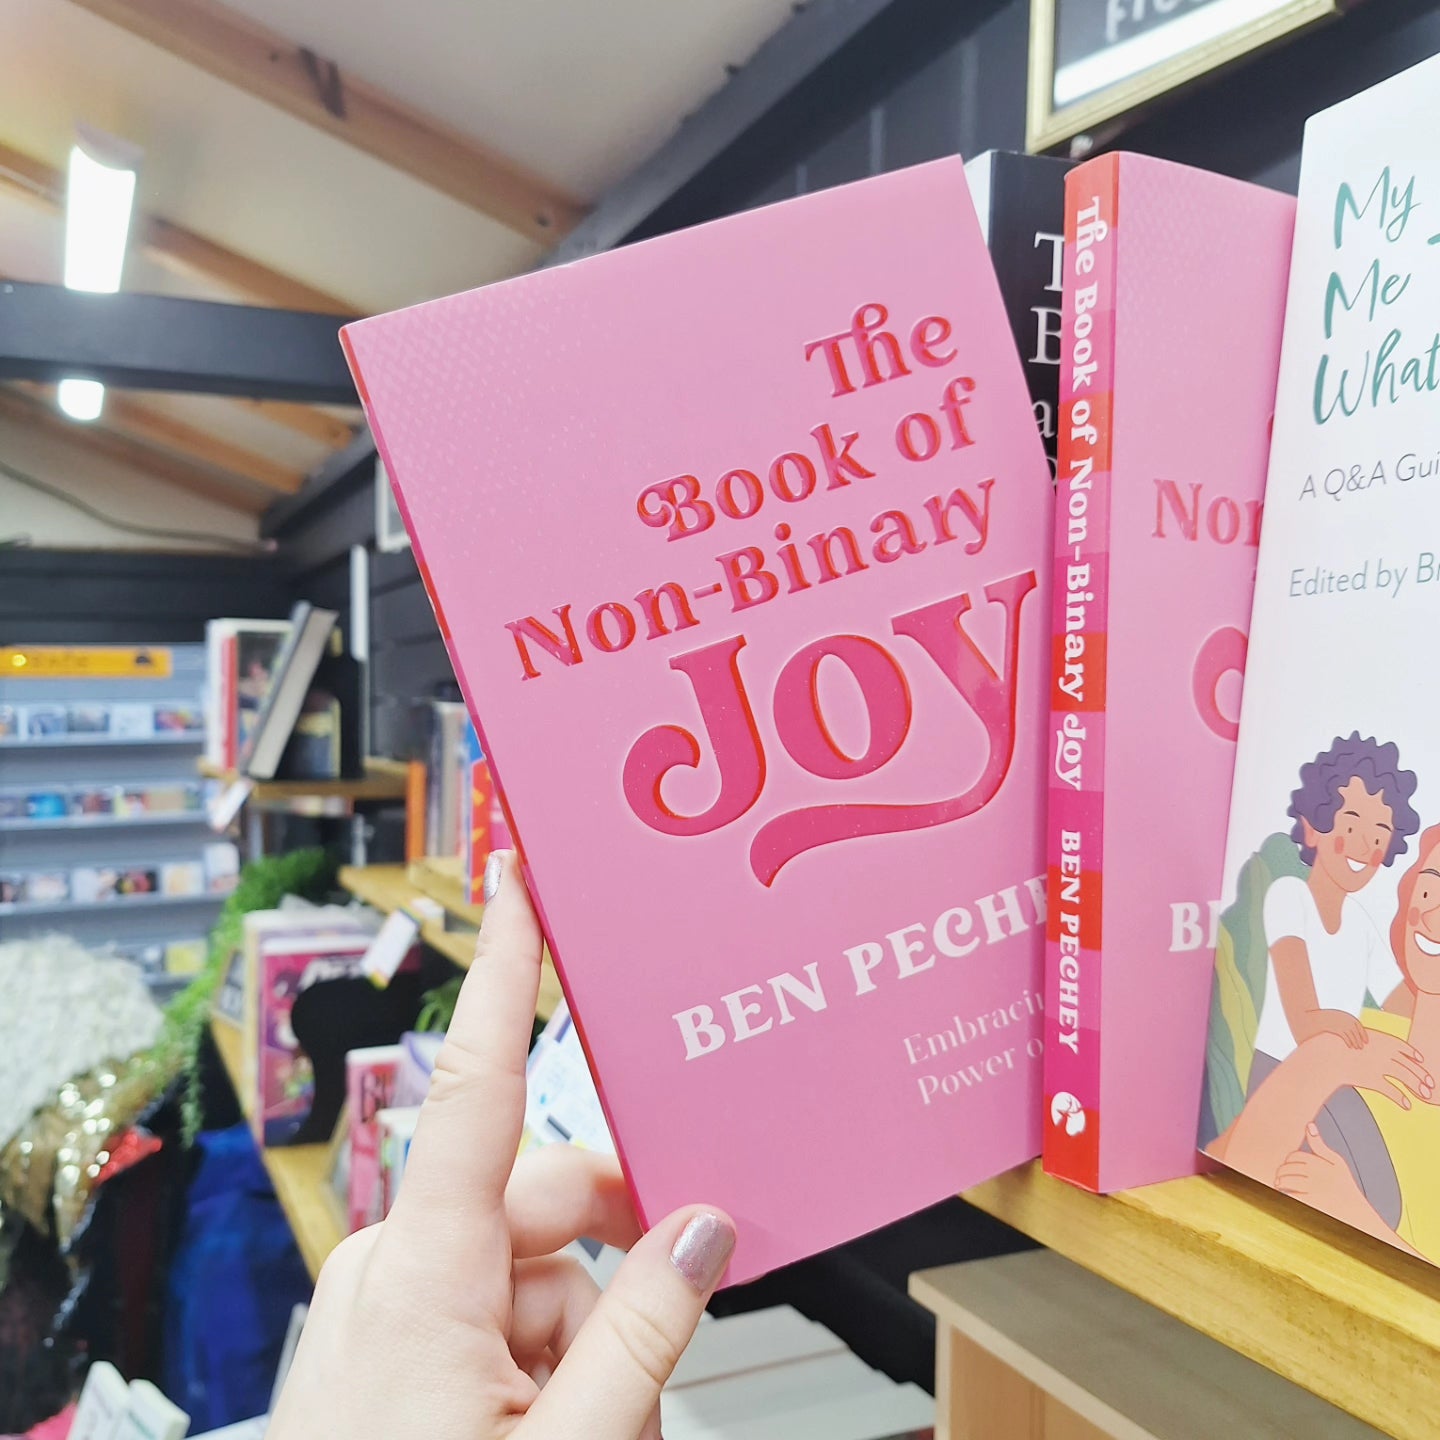 The Book of Non-Binary Joy